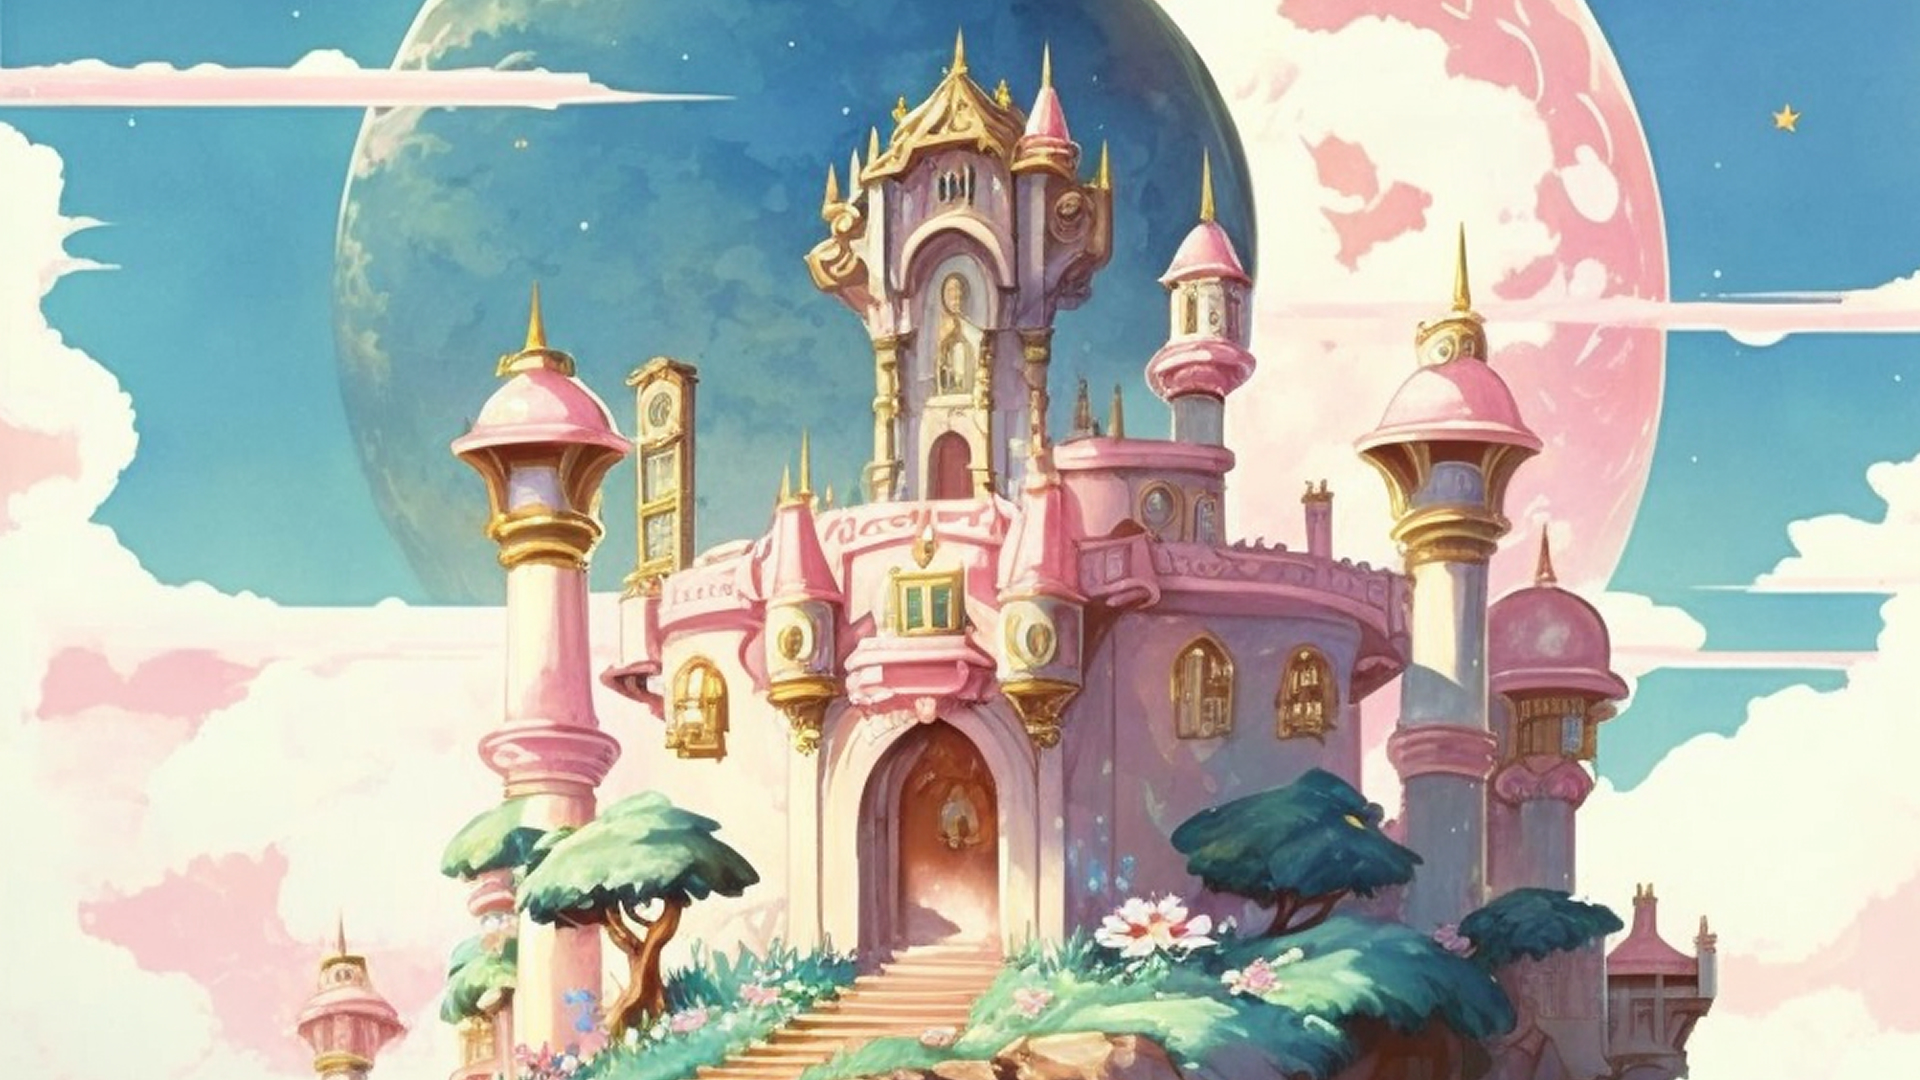 Princess Peach's castle made through AI